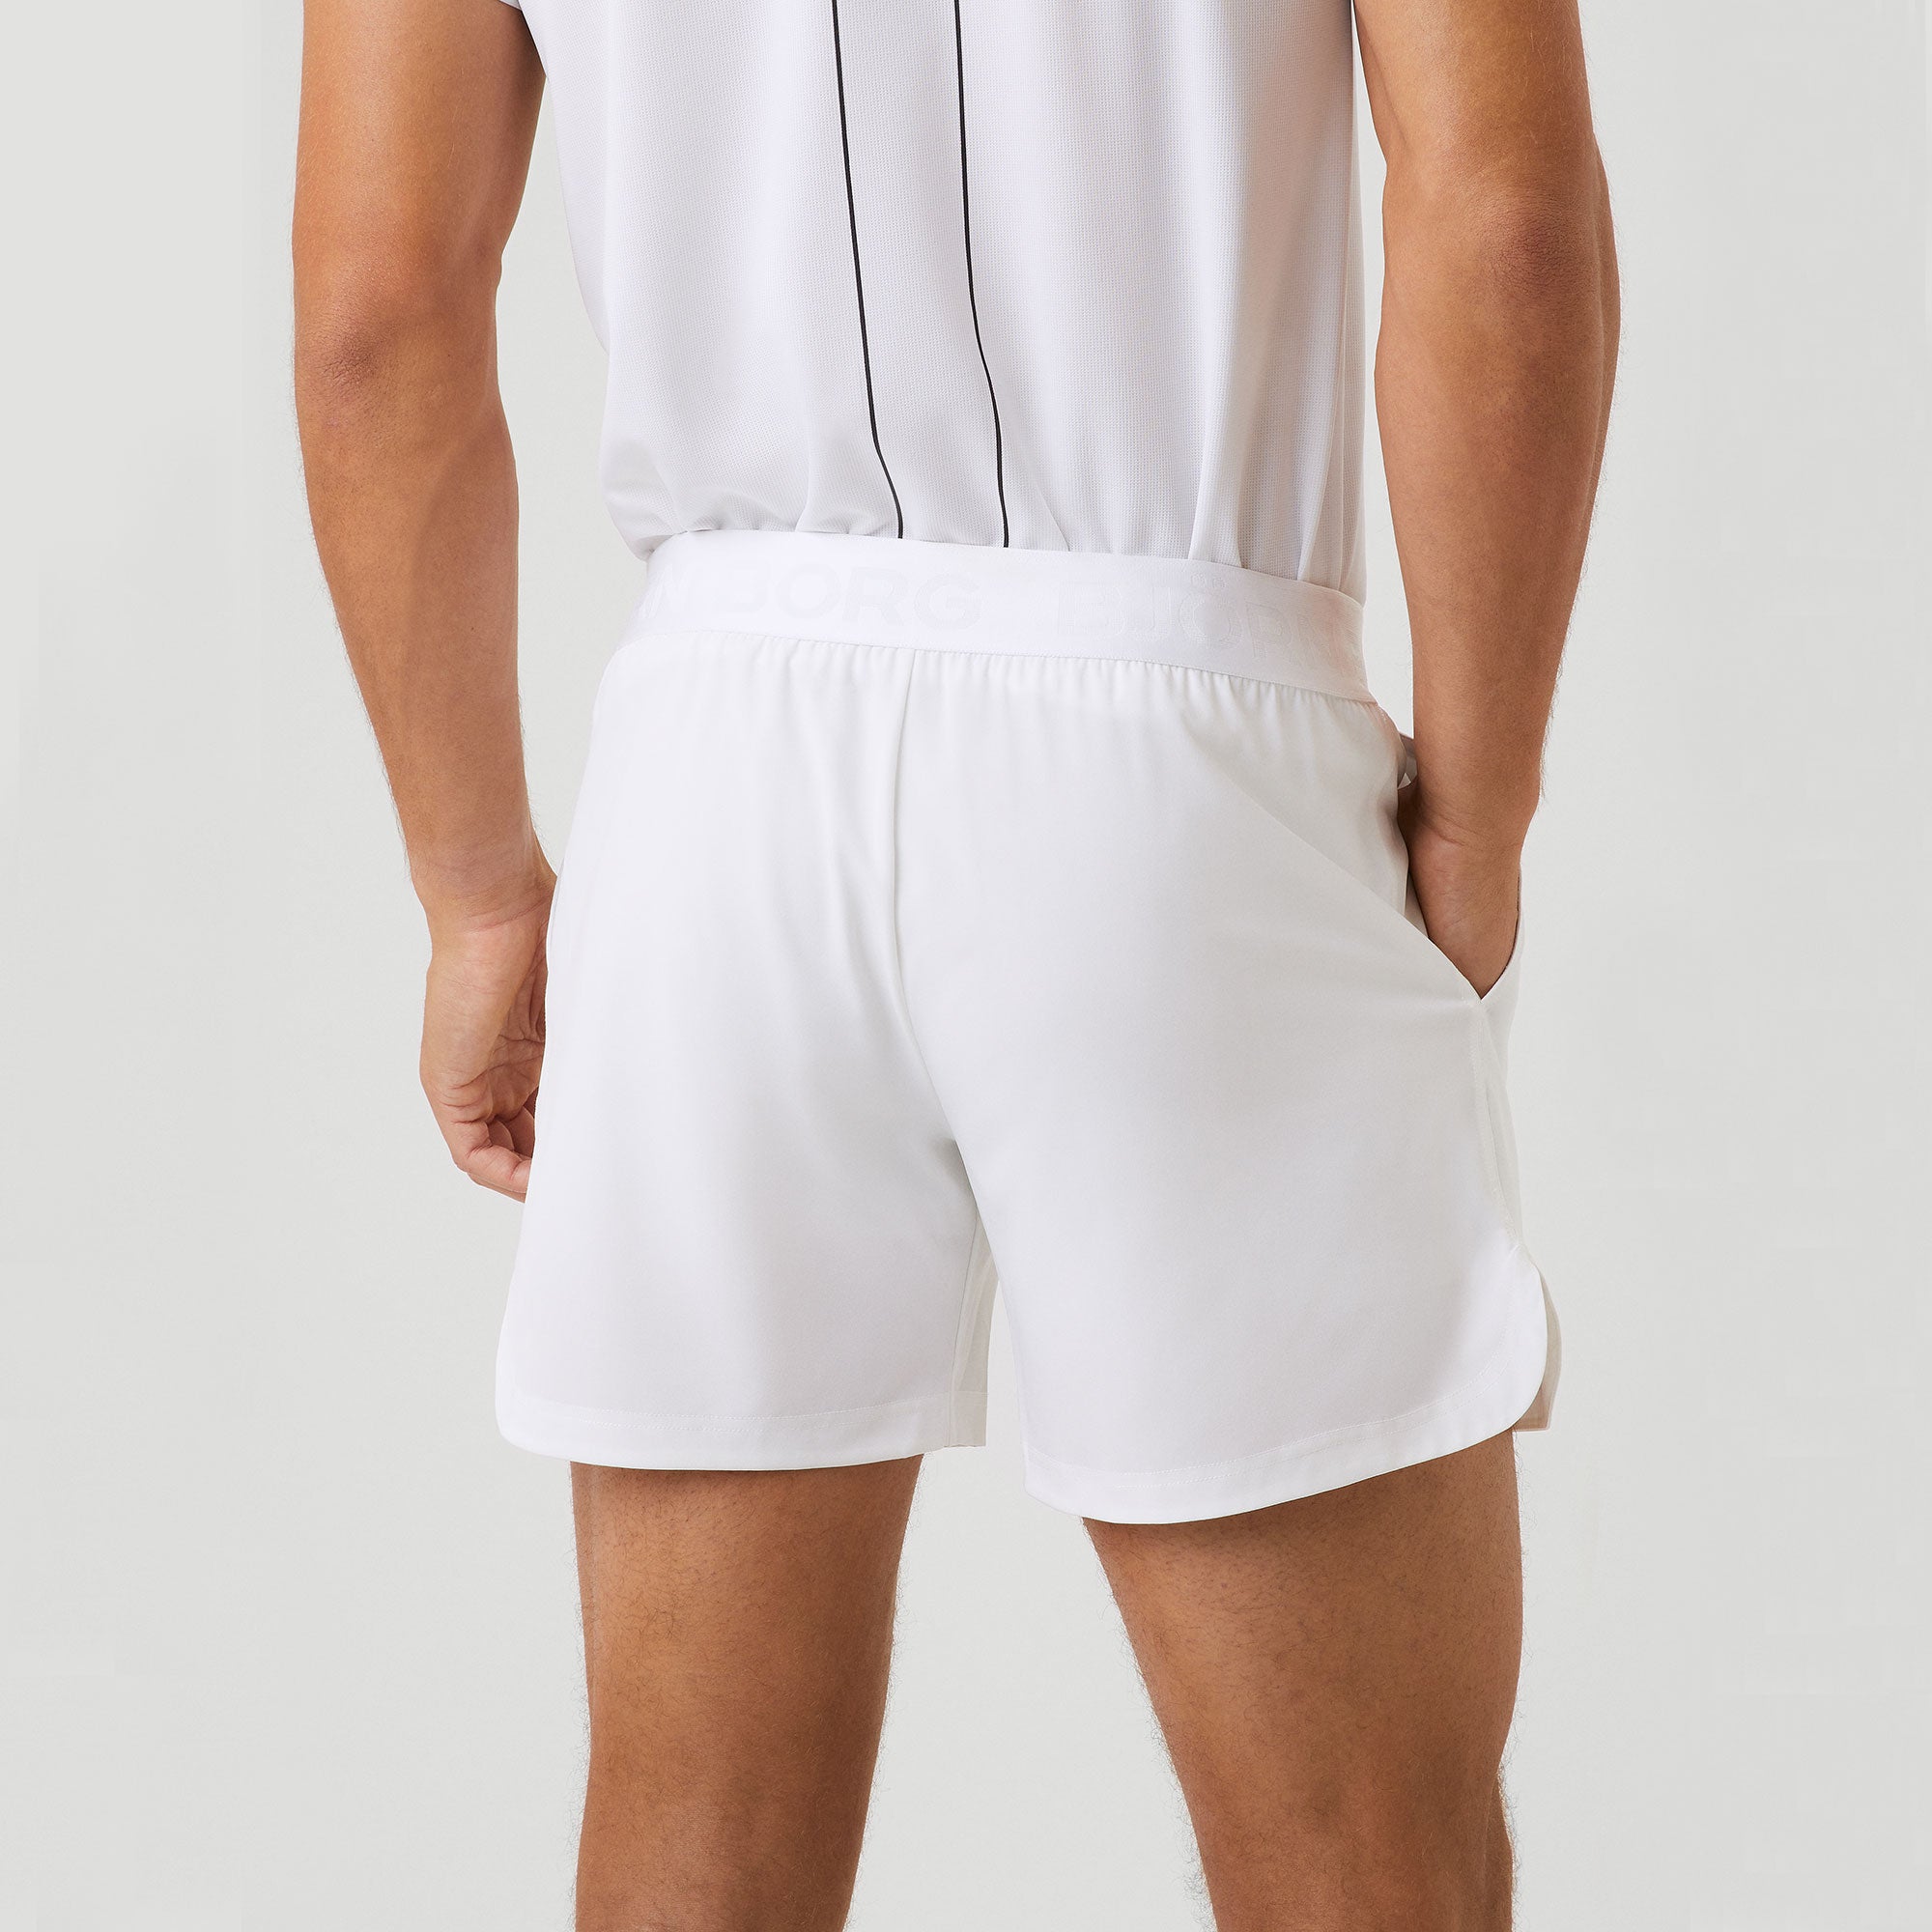 Björn Borg Ace Men's Short Tennis Shorts - White (2)